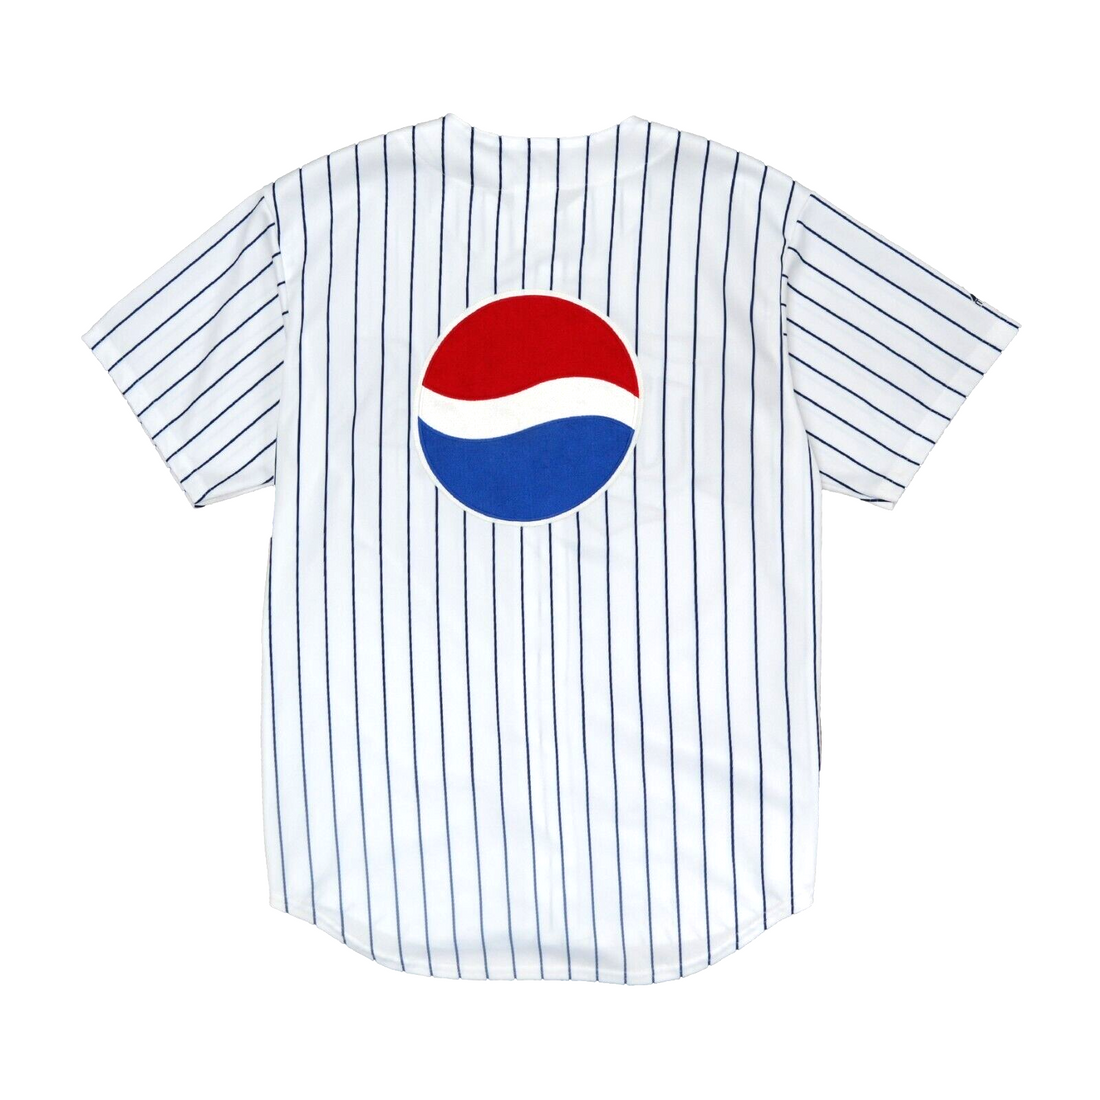 Vintage Minnesota Twins Pepsi Majestic Baseball Jersey Size XL White 90s MLB